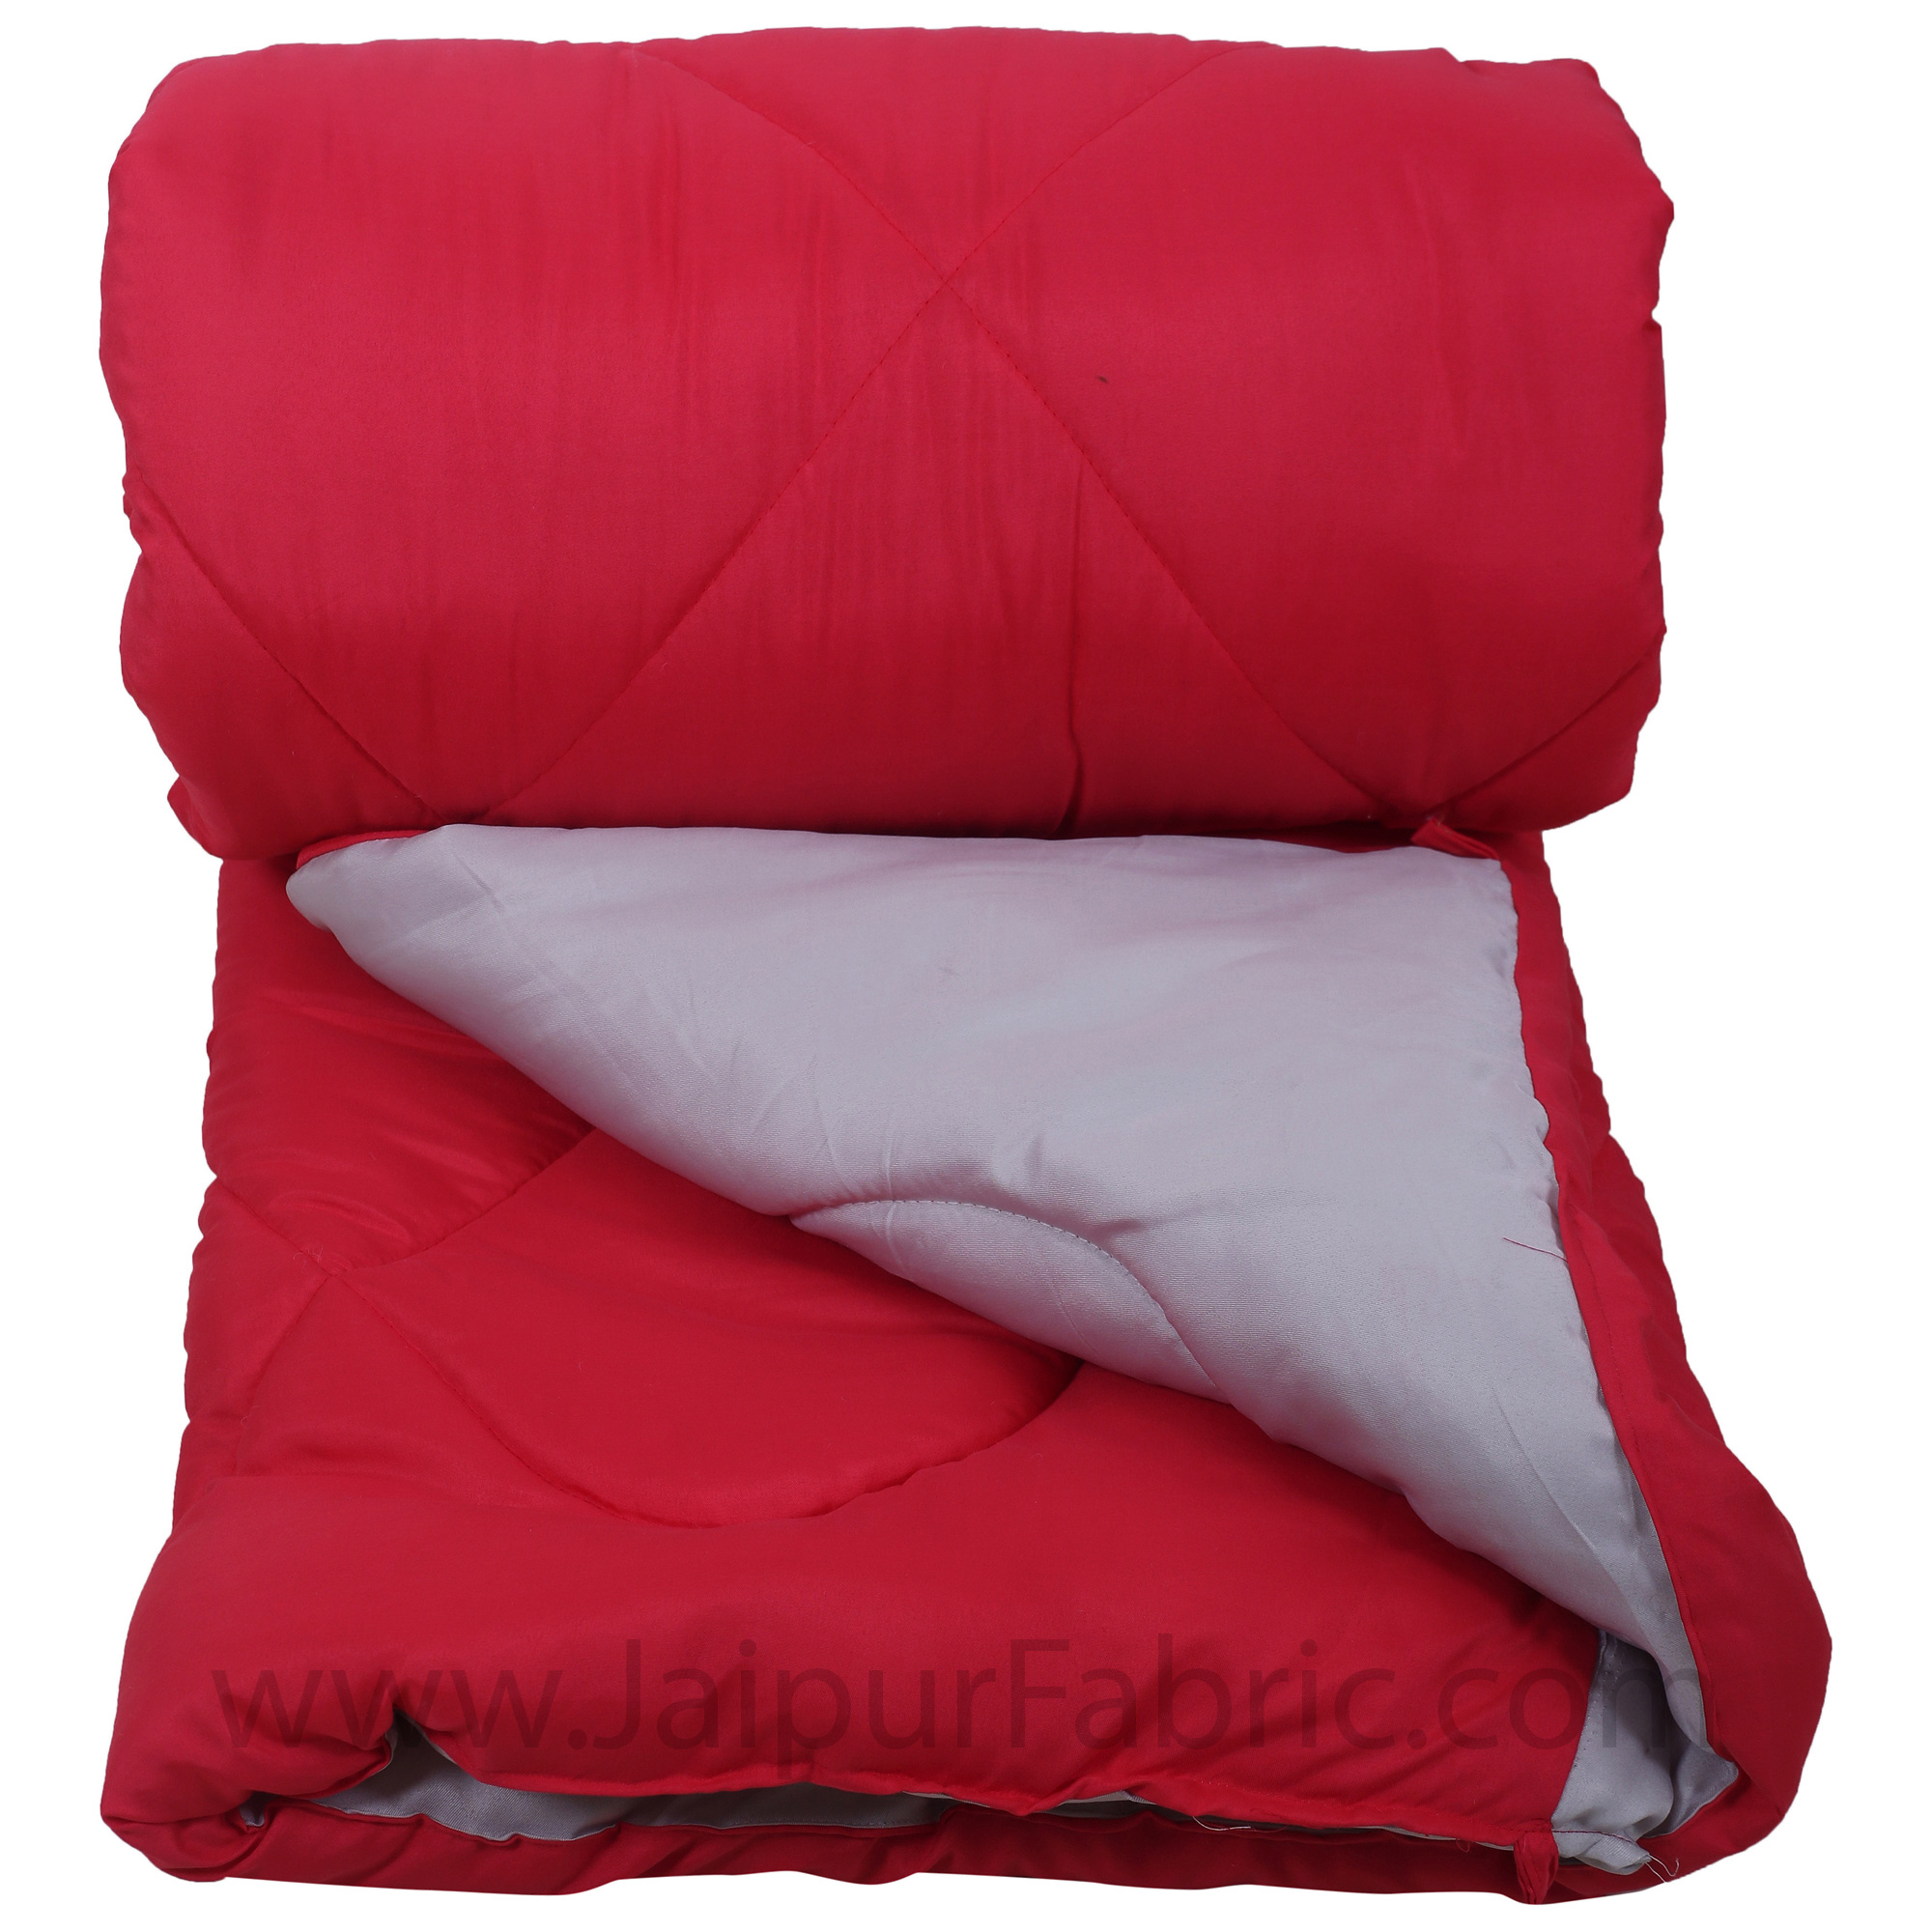 Dark Pink Smoke White Single Bed Comforter